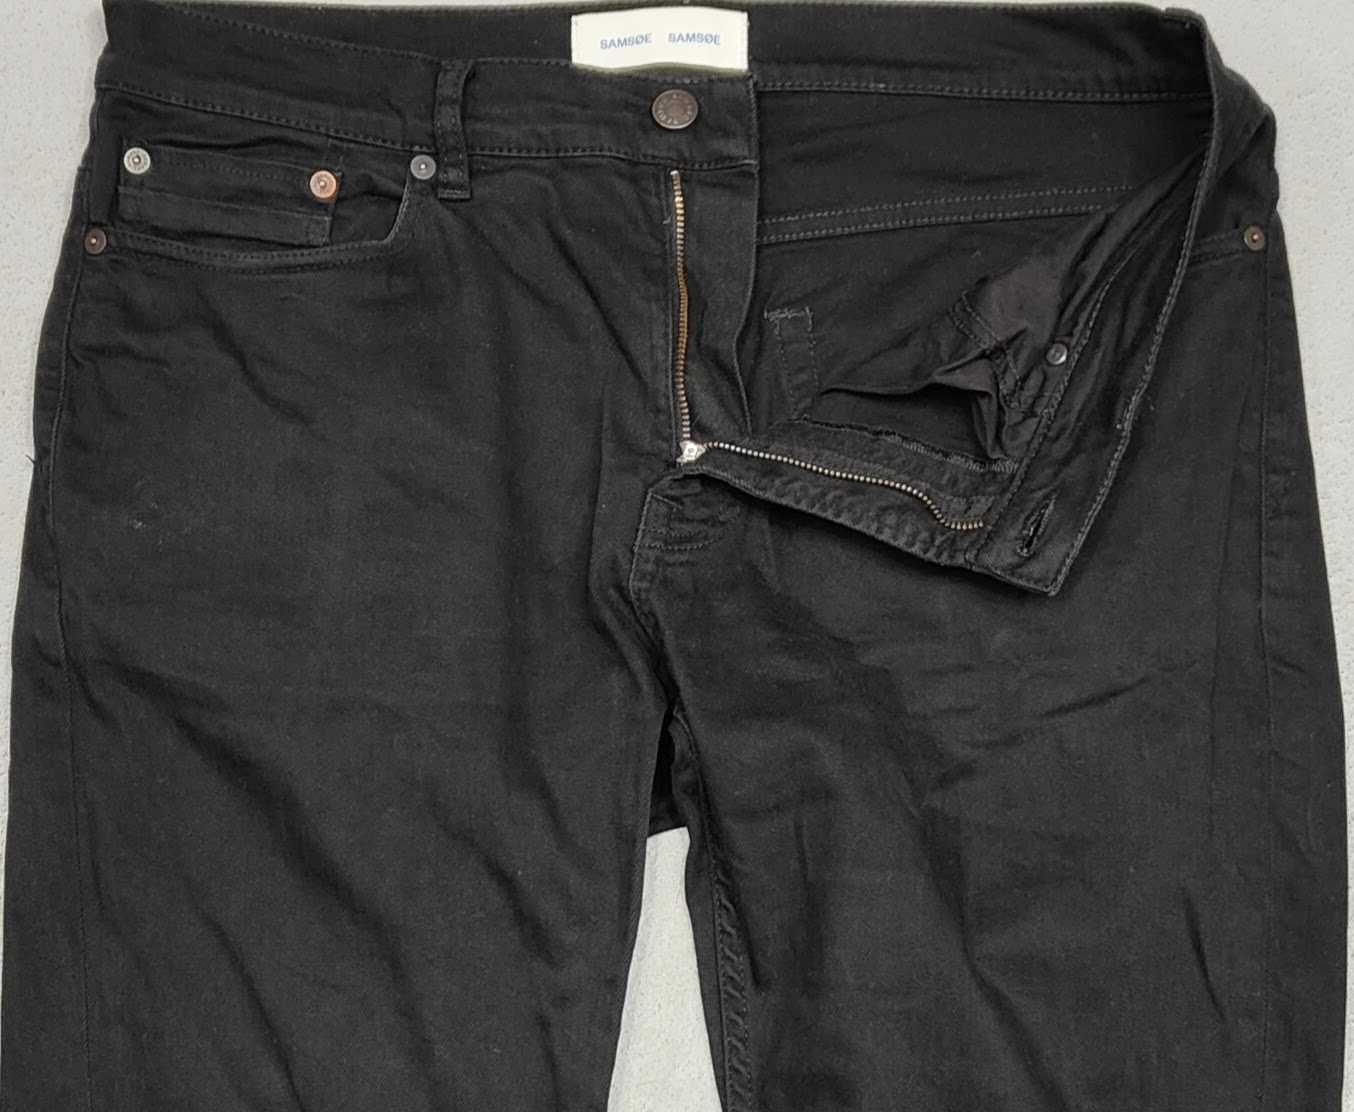 Wr) SAMØE SAMØE męskie spodnie jeansowe Roz.34 /32